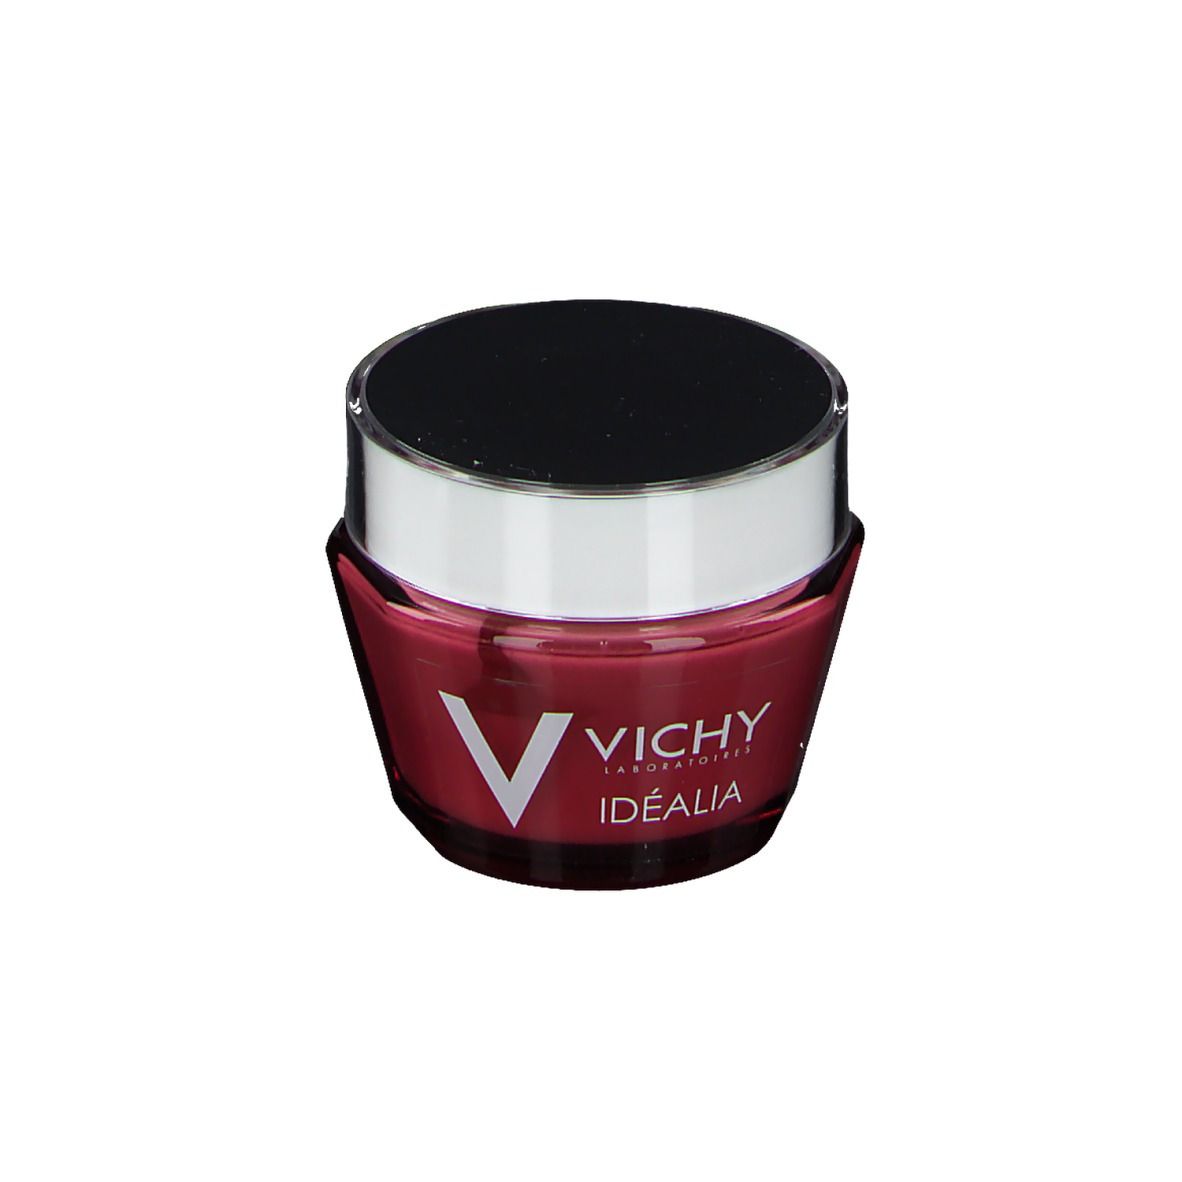 Vichy Idealia Crema Viso Giorno per pelle normale e mista 50 ml